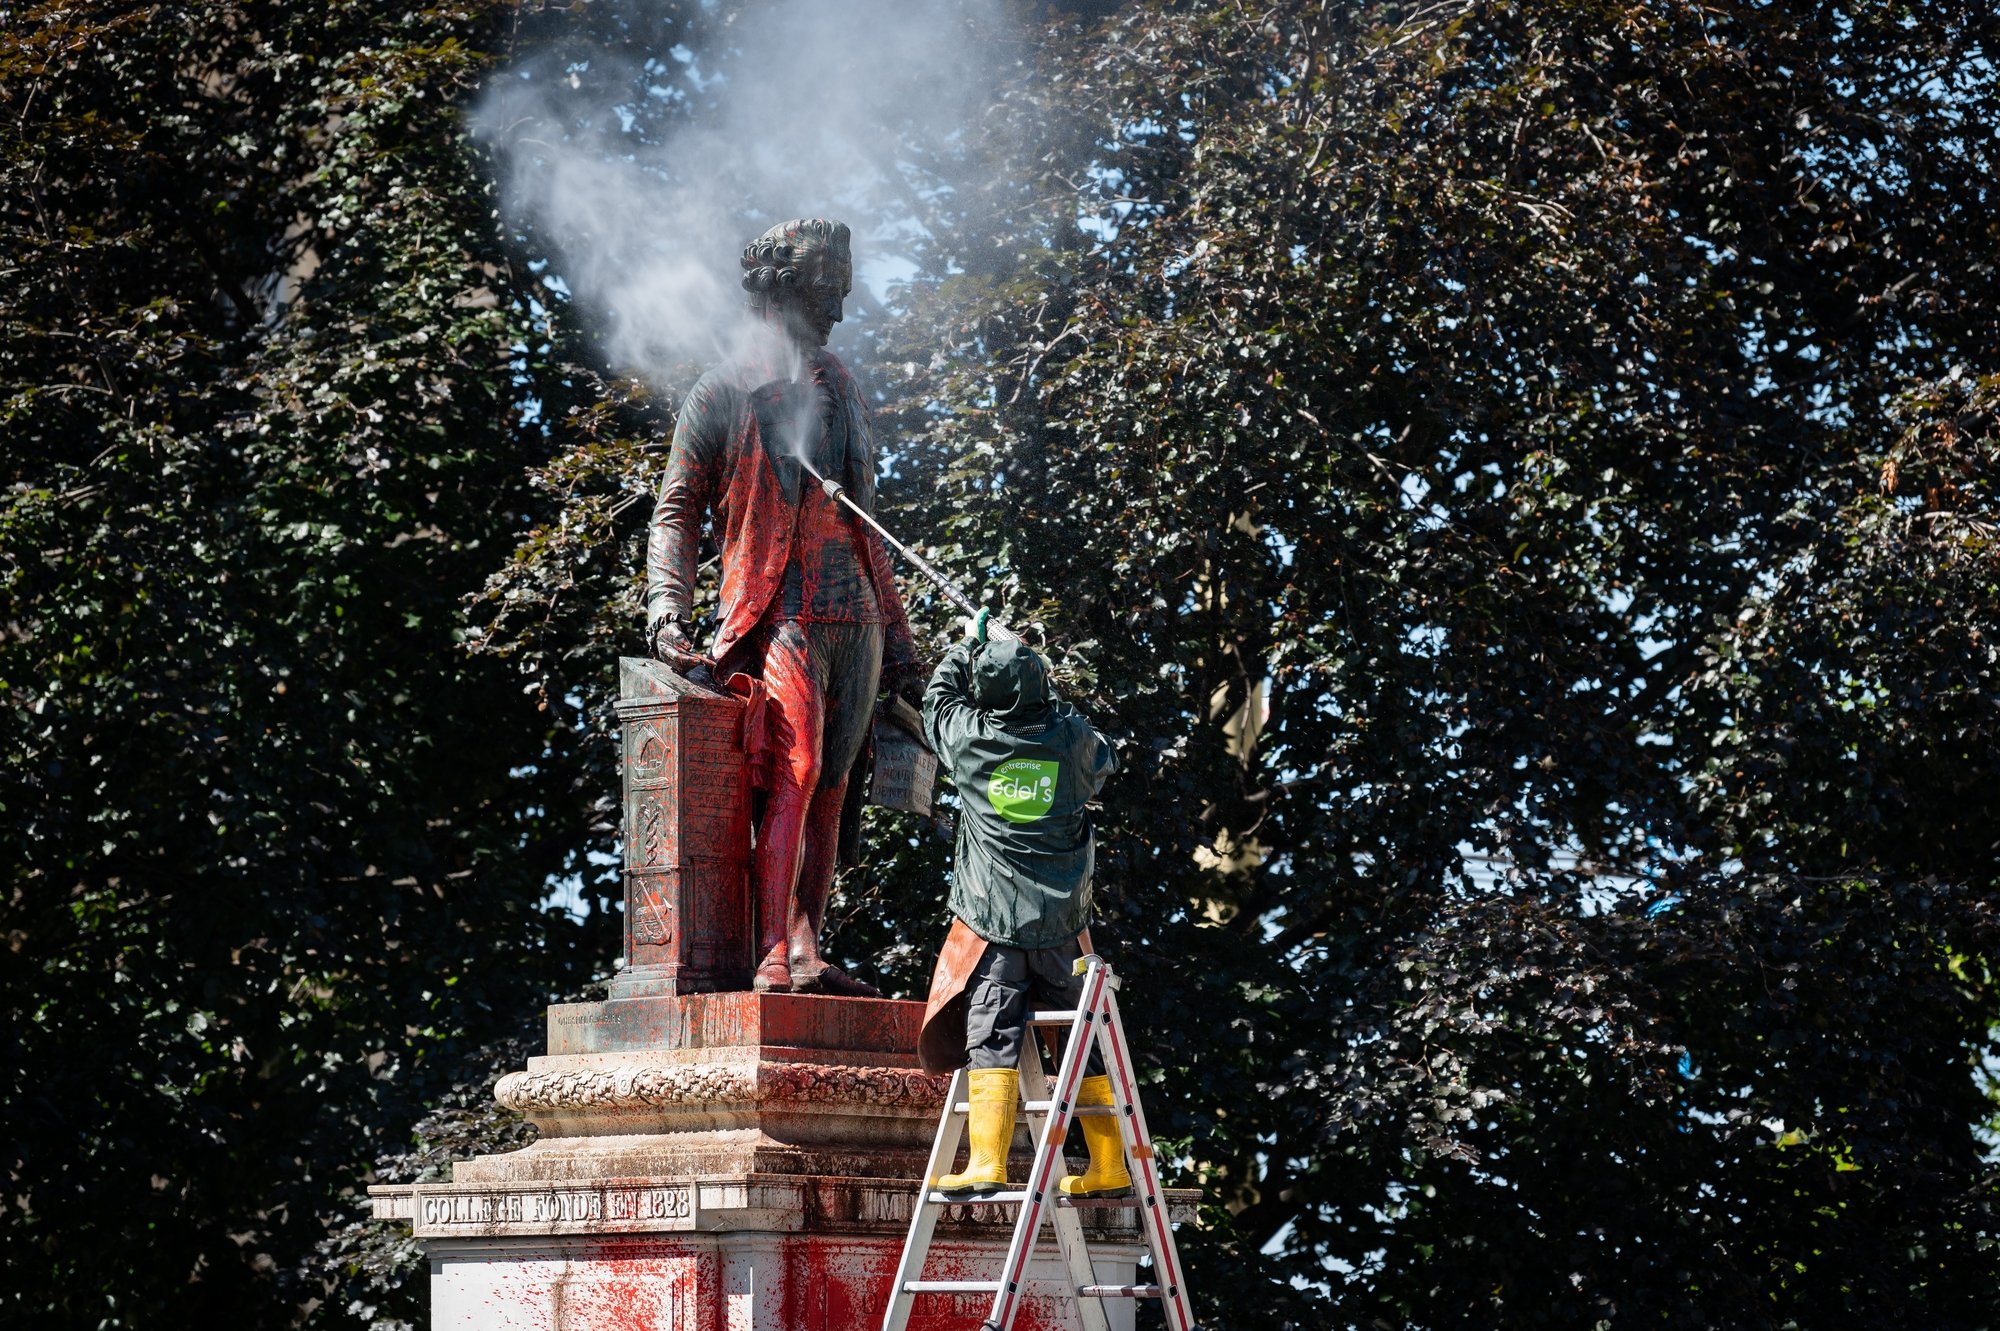 A l'instar des autorités neuchâteloises, nos lecteurs réagissent aux déprédations dont la statue de David de Pury a été l'objet.